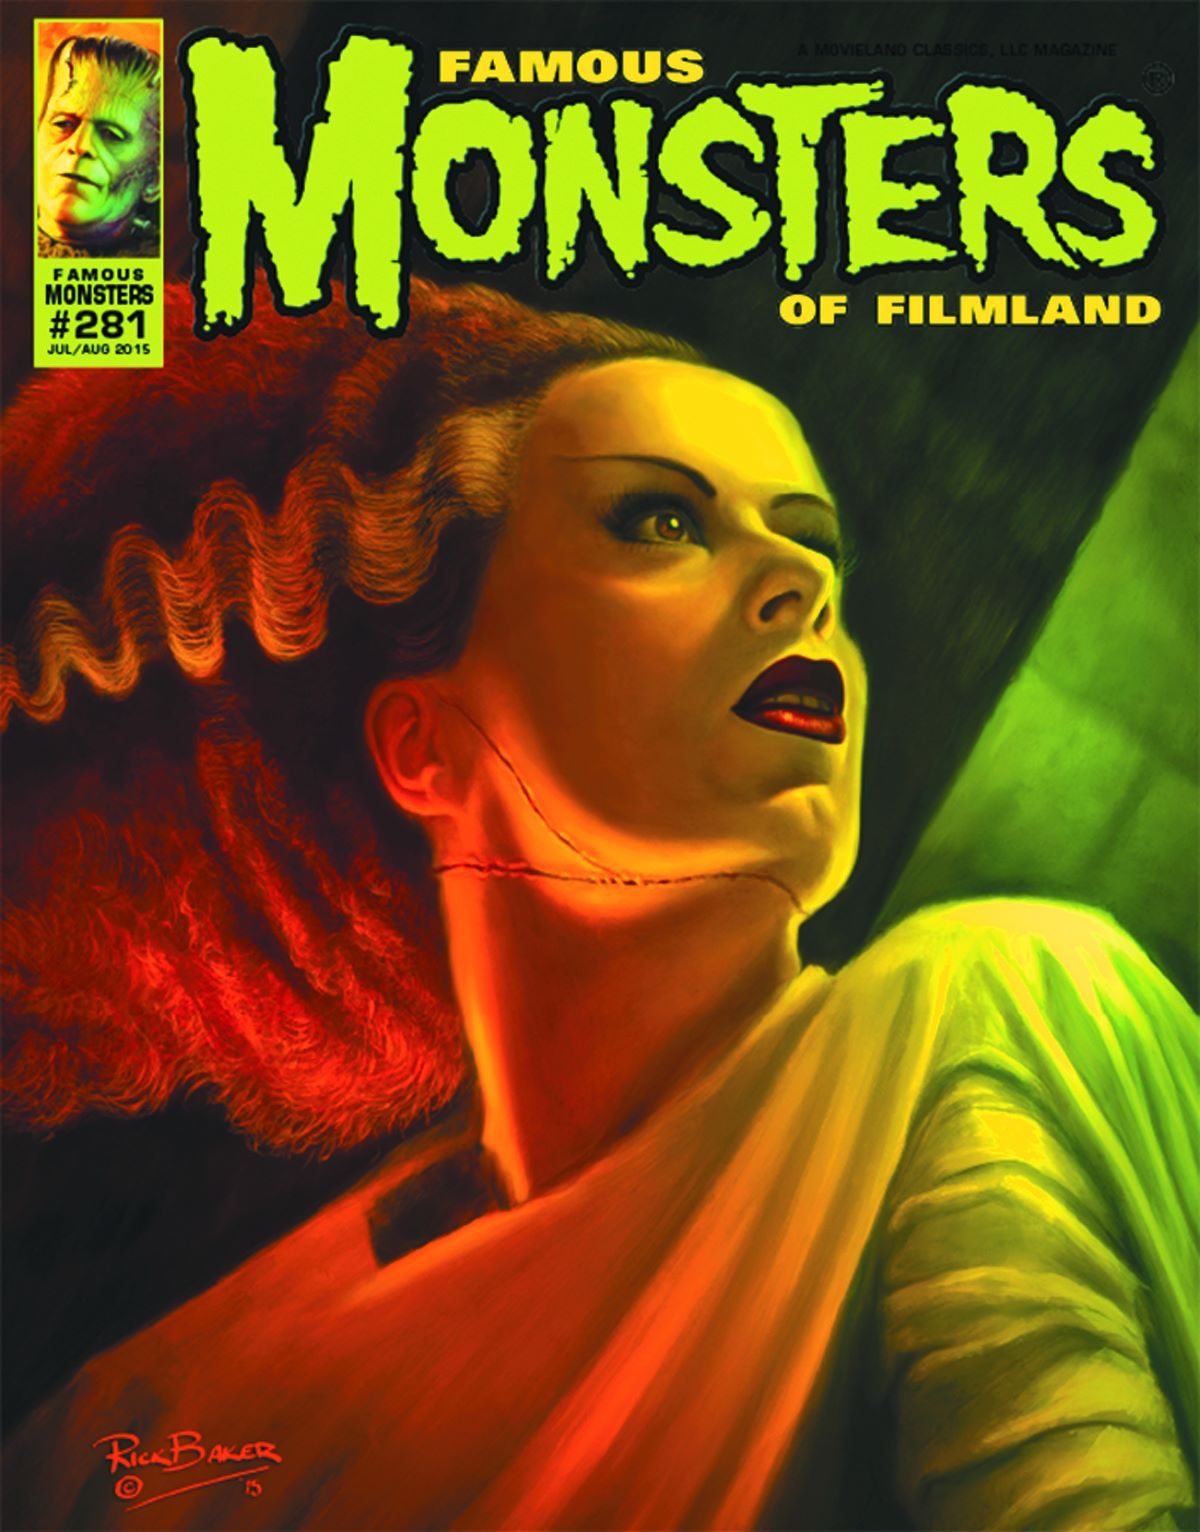 Famous Monsters of Filmland, magazine, horror films, Bride of Frankenstein